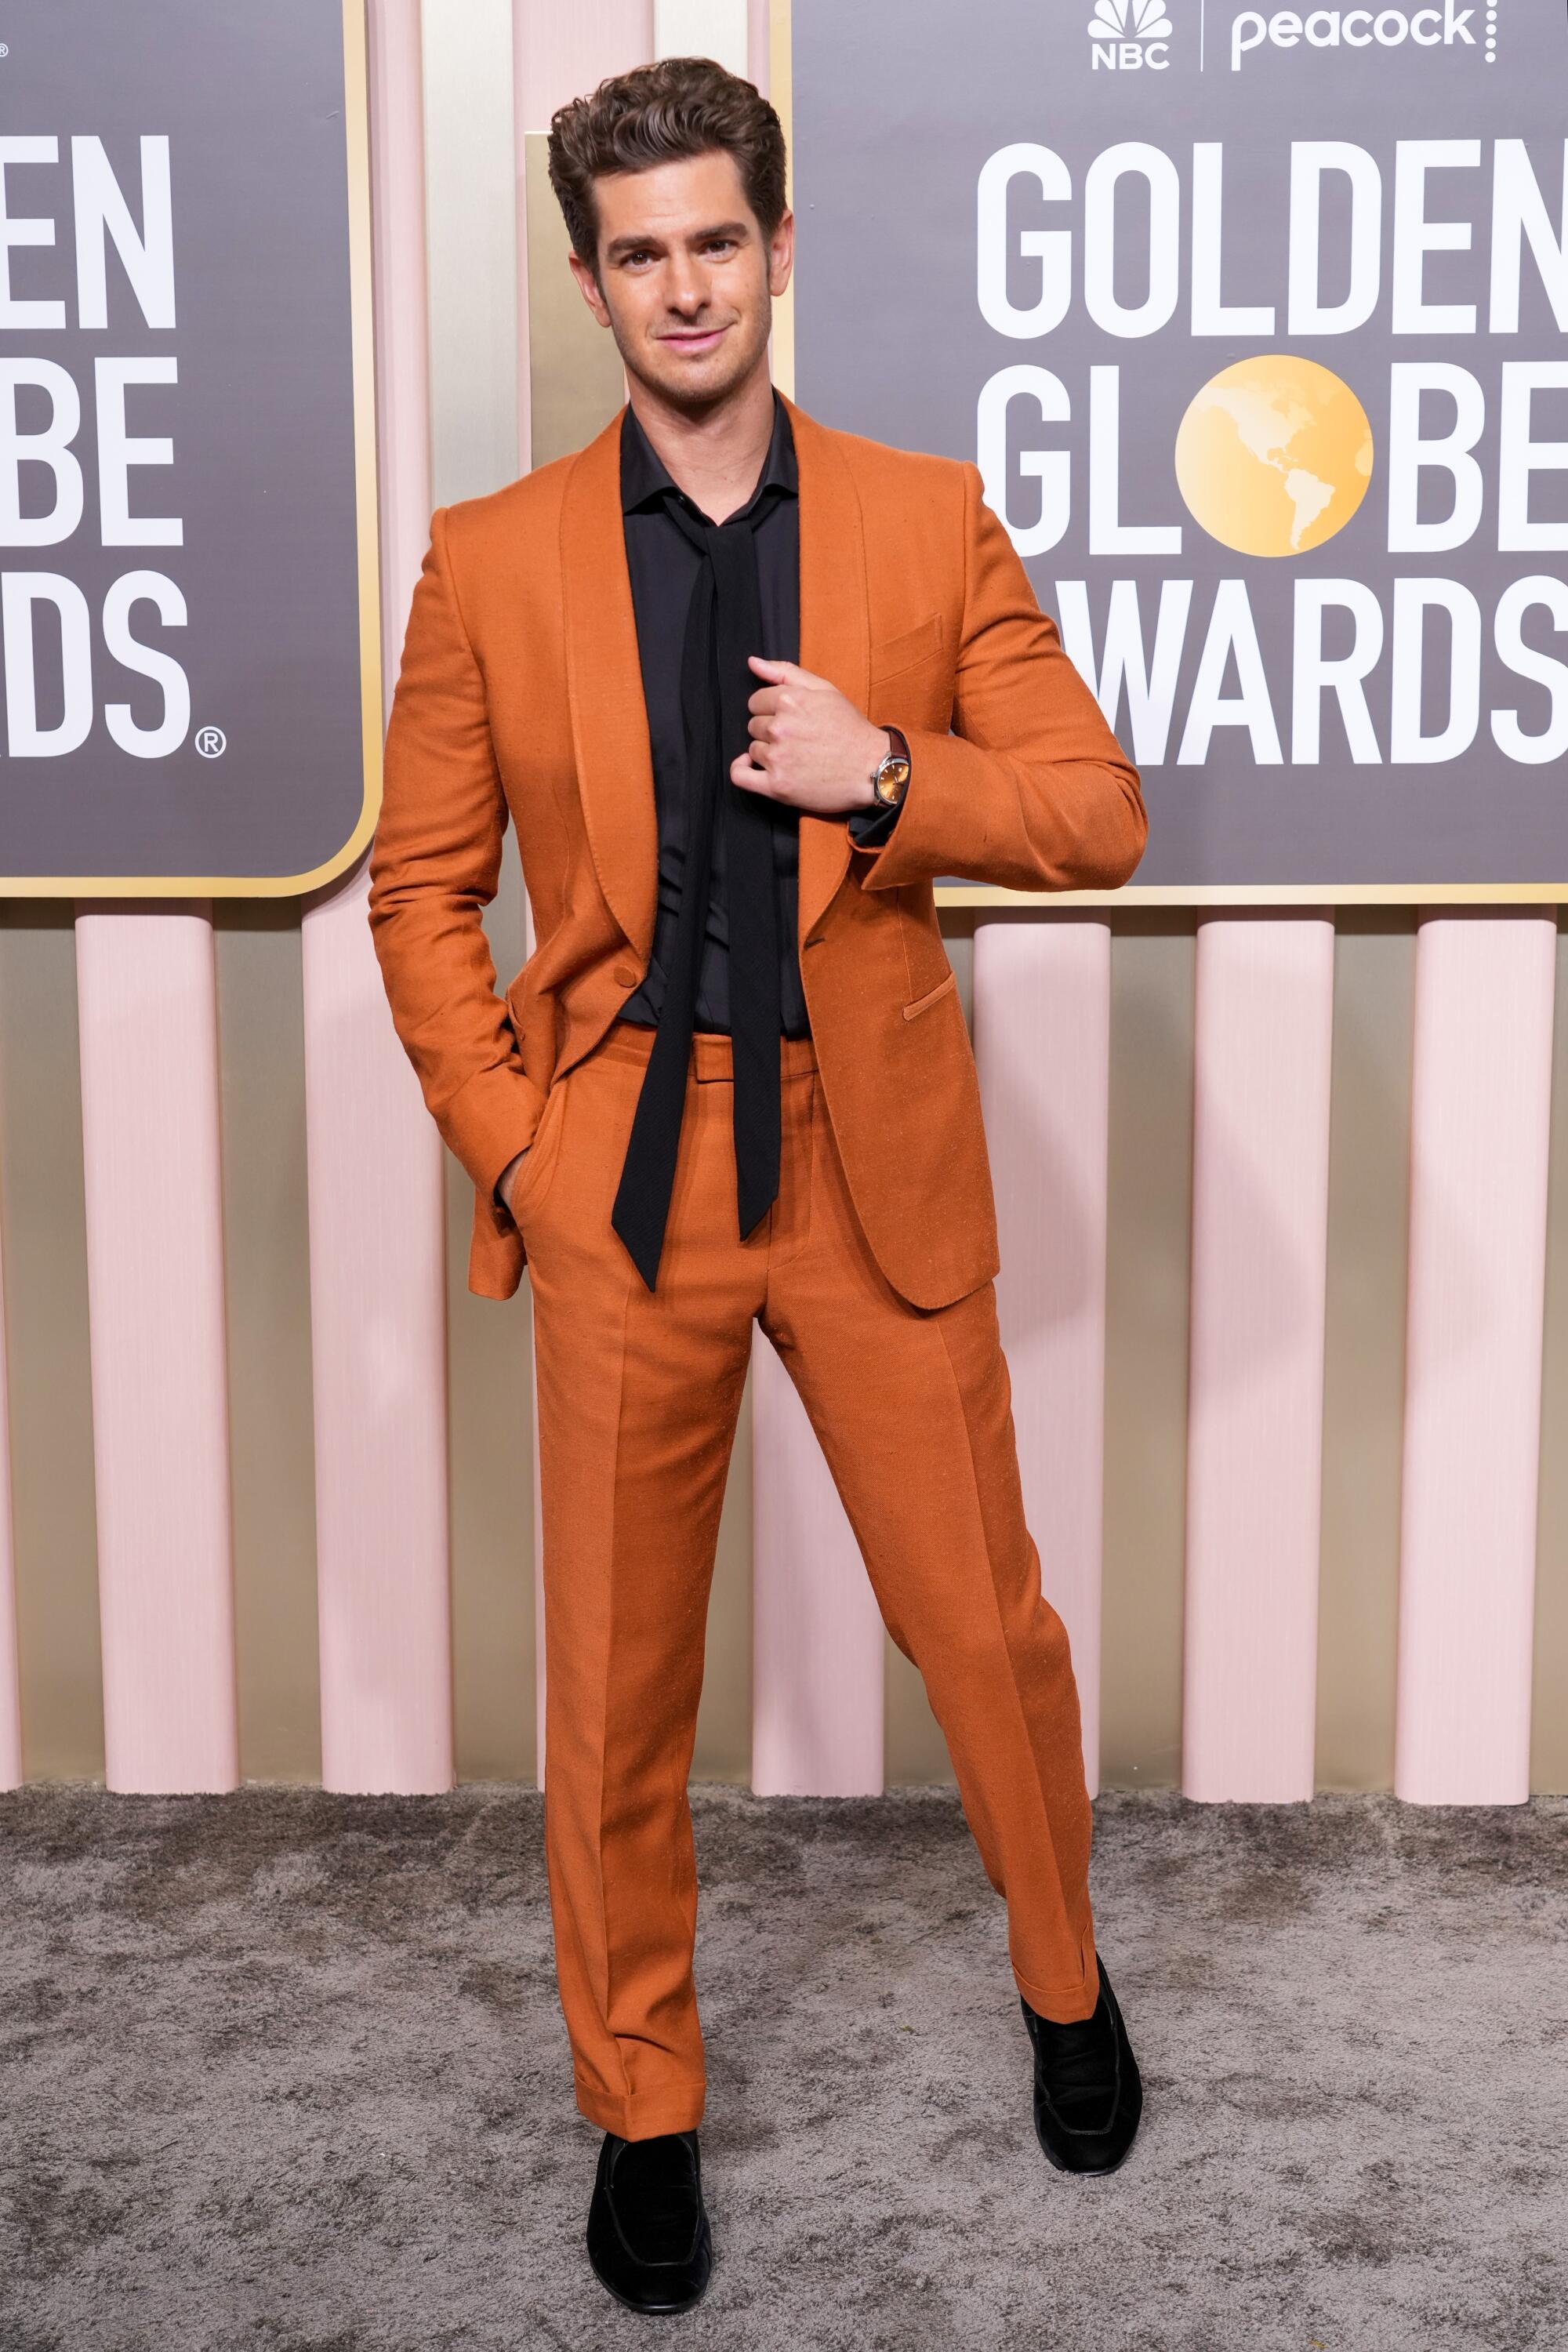 Andrew Garfield se ve increíble con un traje naranja de Zegna.